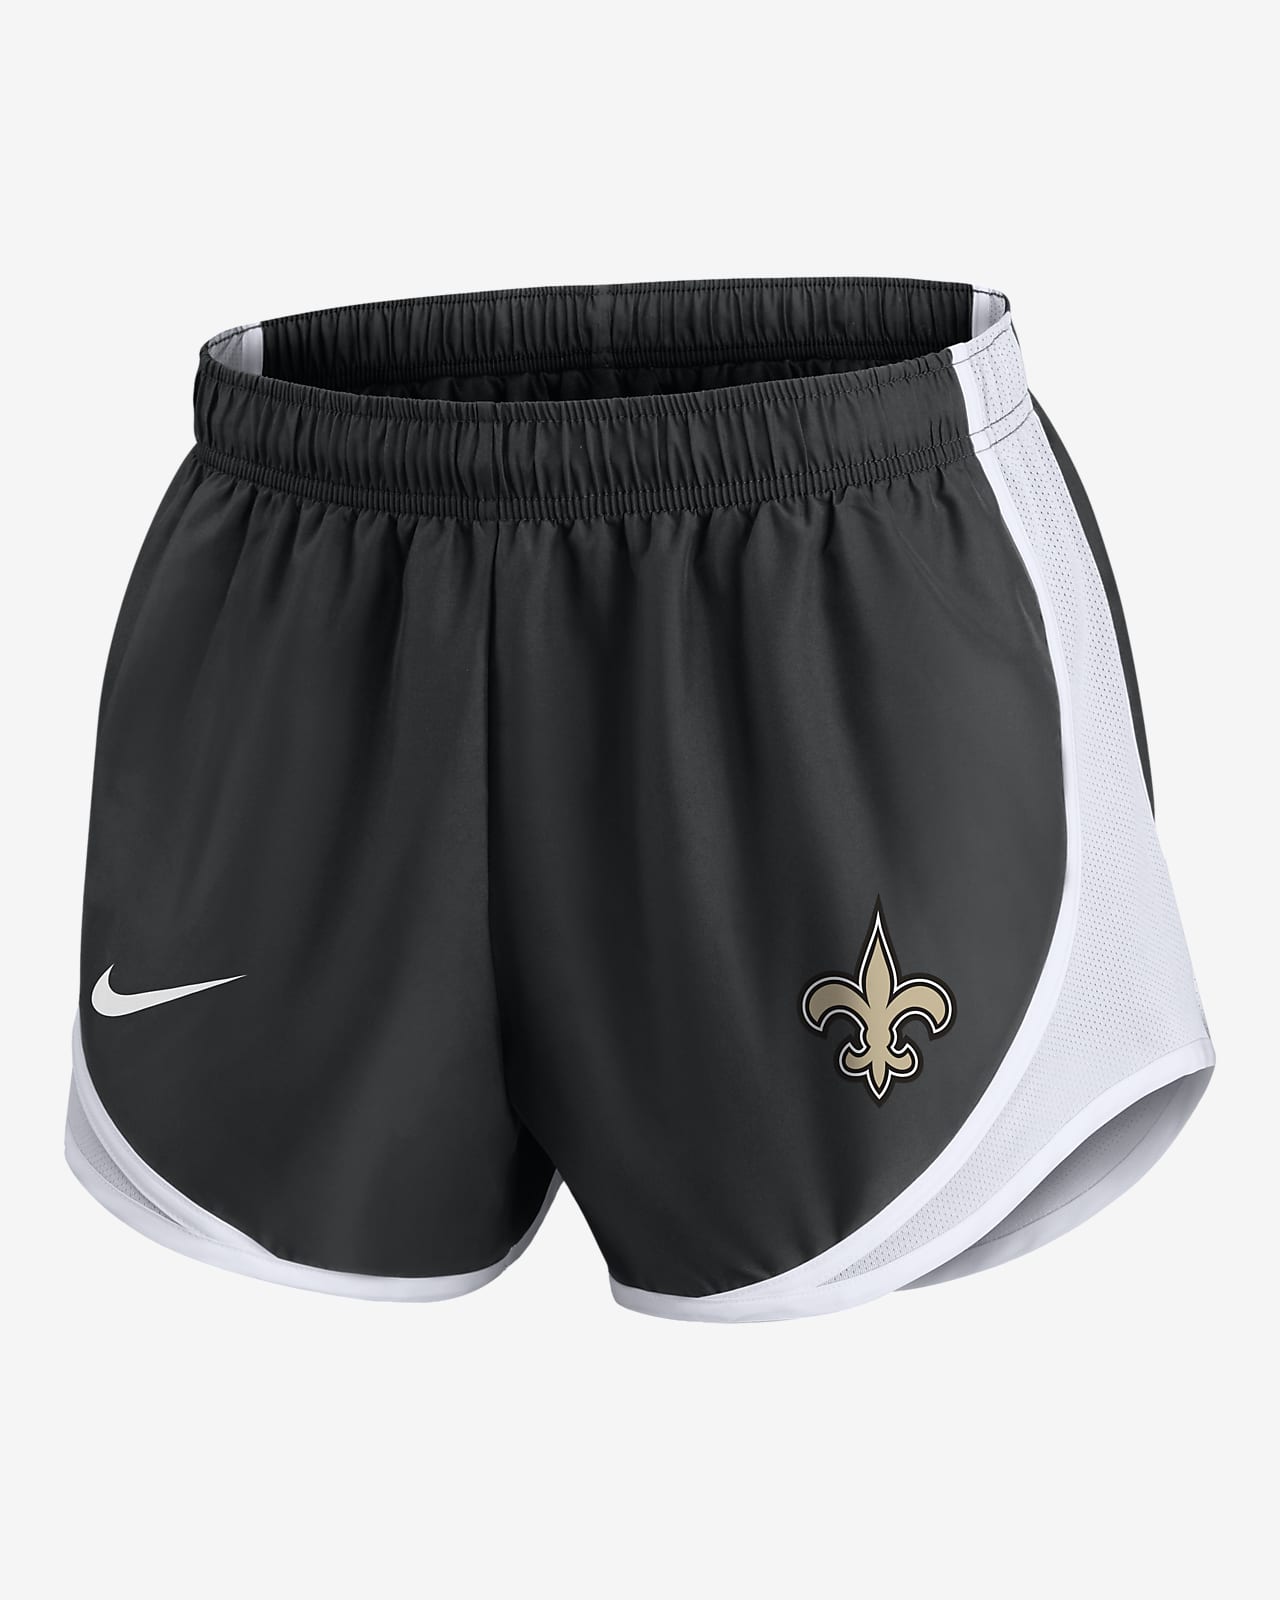 Shorts Nike Dri-FIT de la NFL para mujer New Orleans Saints Tempo